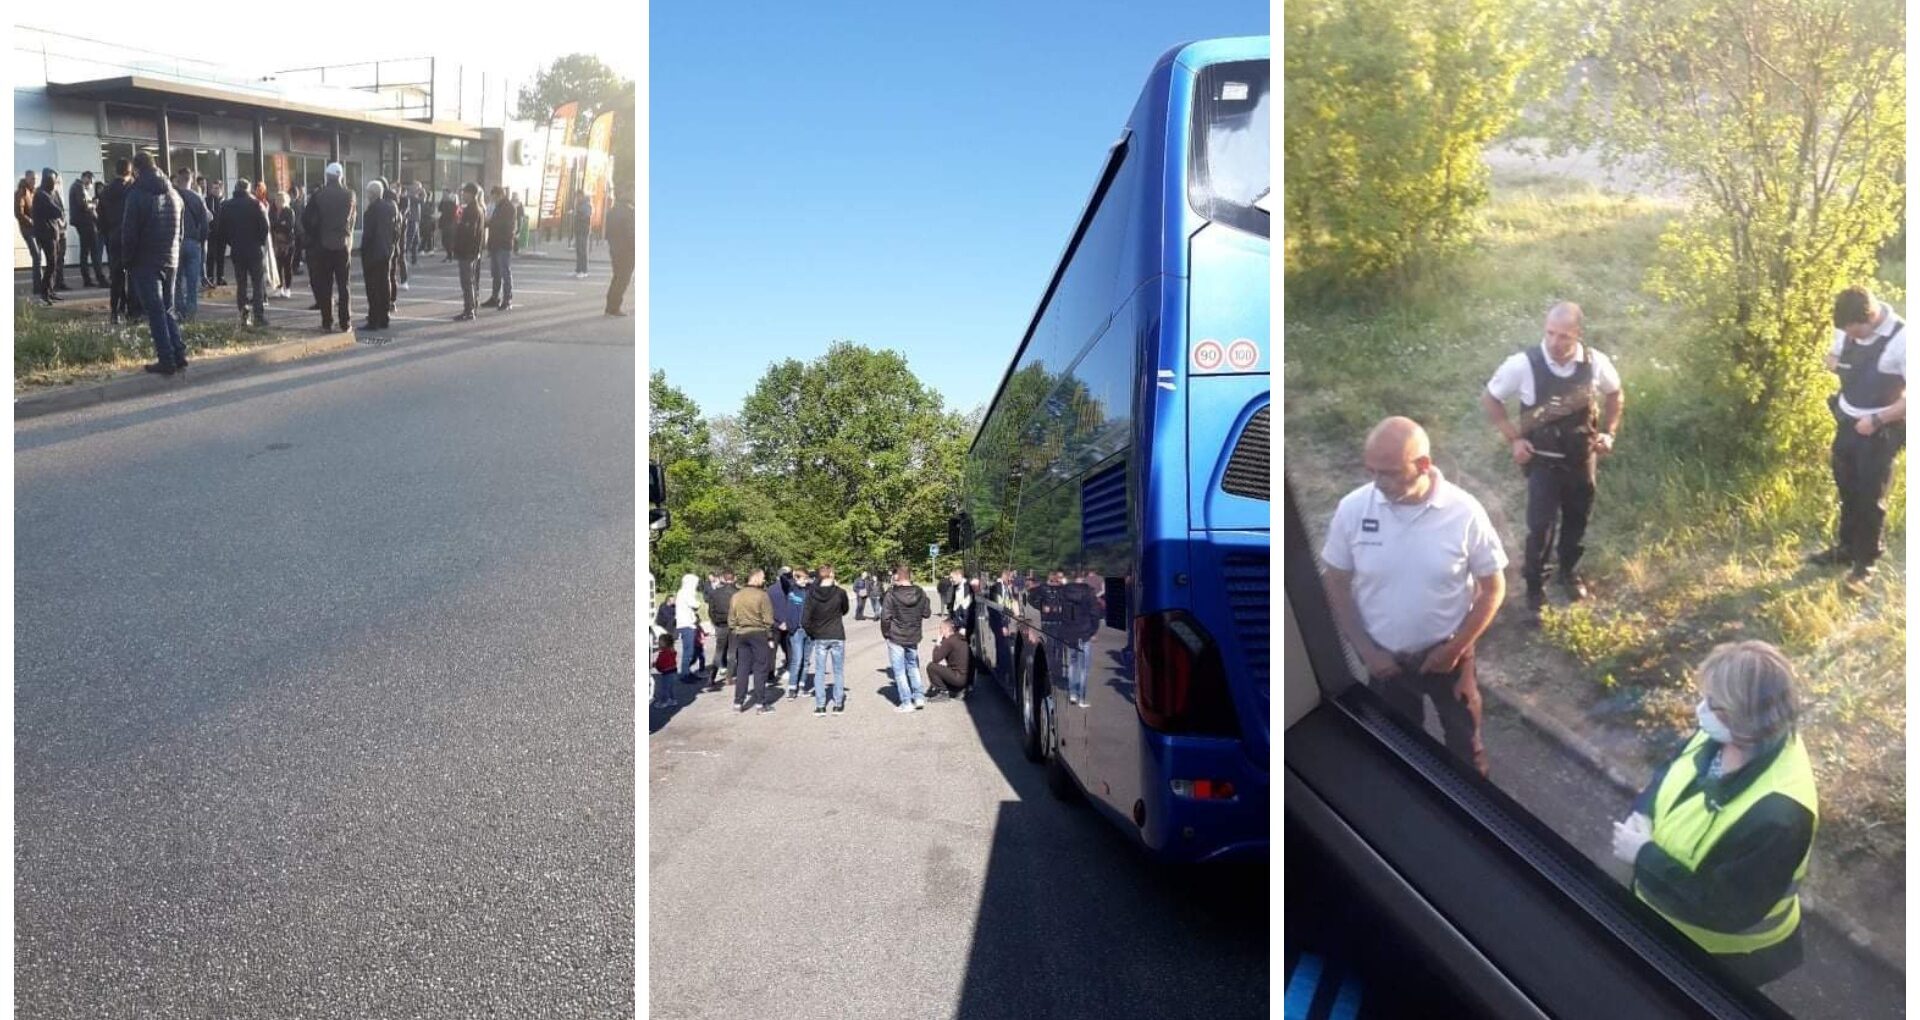 Peste 240 de cetățeni ai R. Moldova, printre care și minori, blocați la frontiera franco-germană